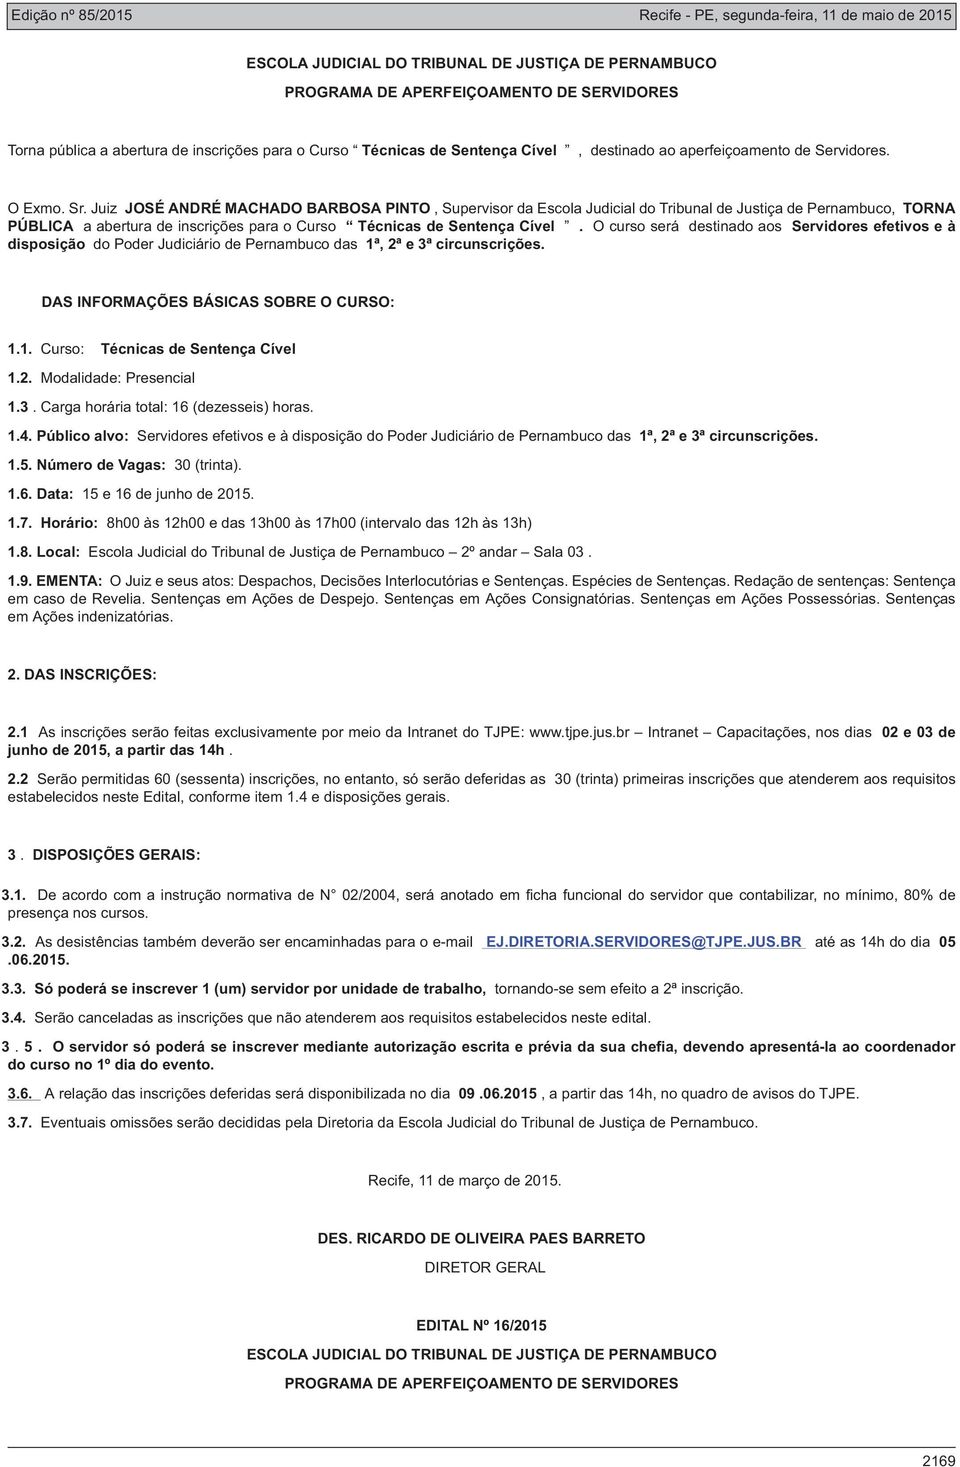 Público alvo: Servidores efetivos e à disposição do Poder Judiciário de Pernambuco das 1ª, 2ª e 3ª circunscrições. 1.6. Data: 15 e 16 de junho de 2015. 1.8.